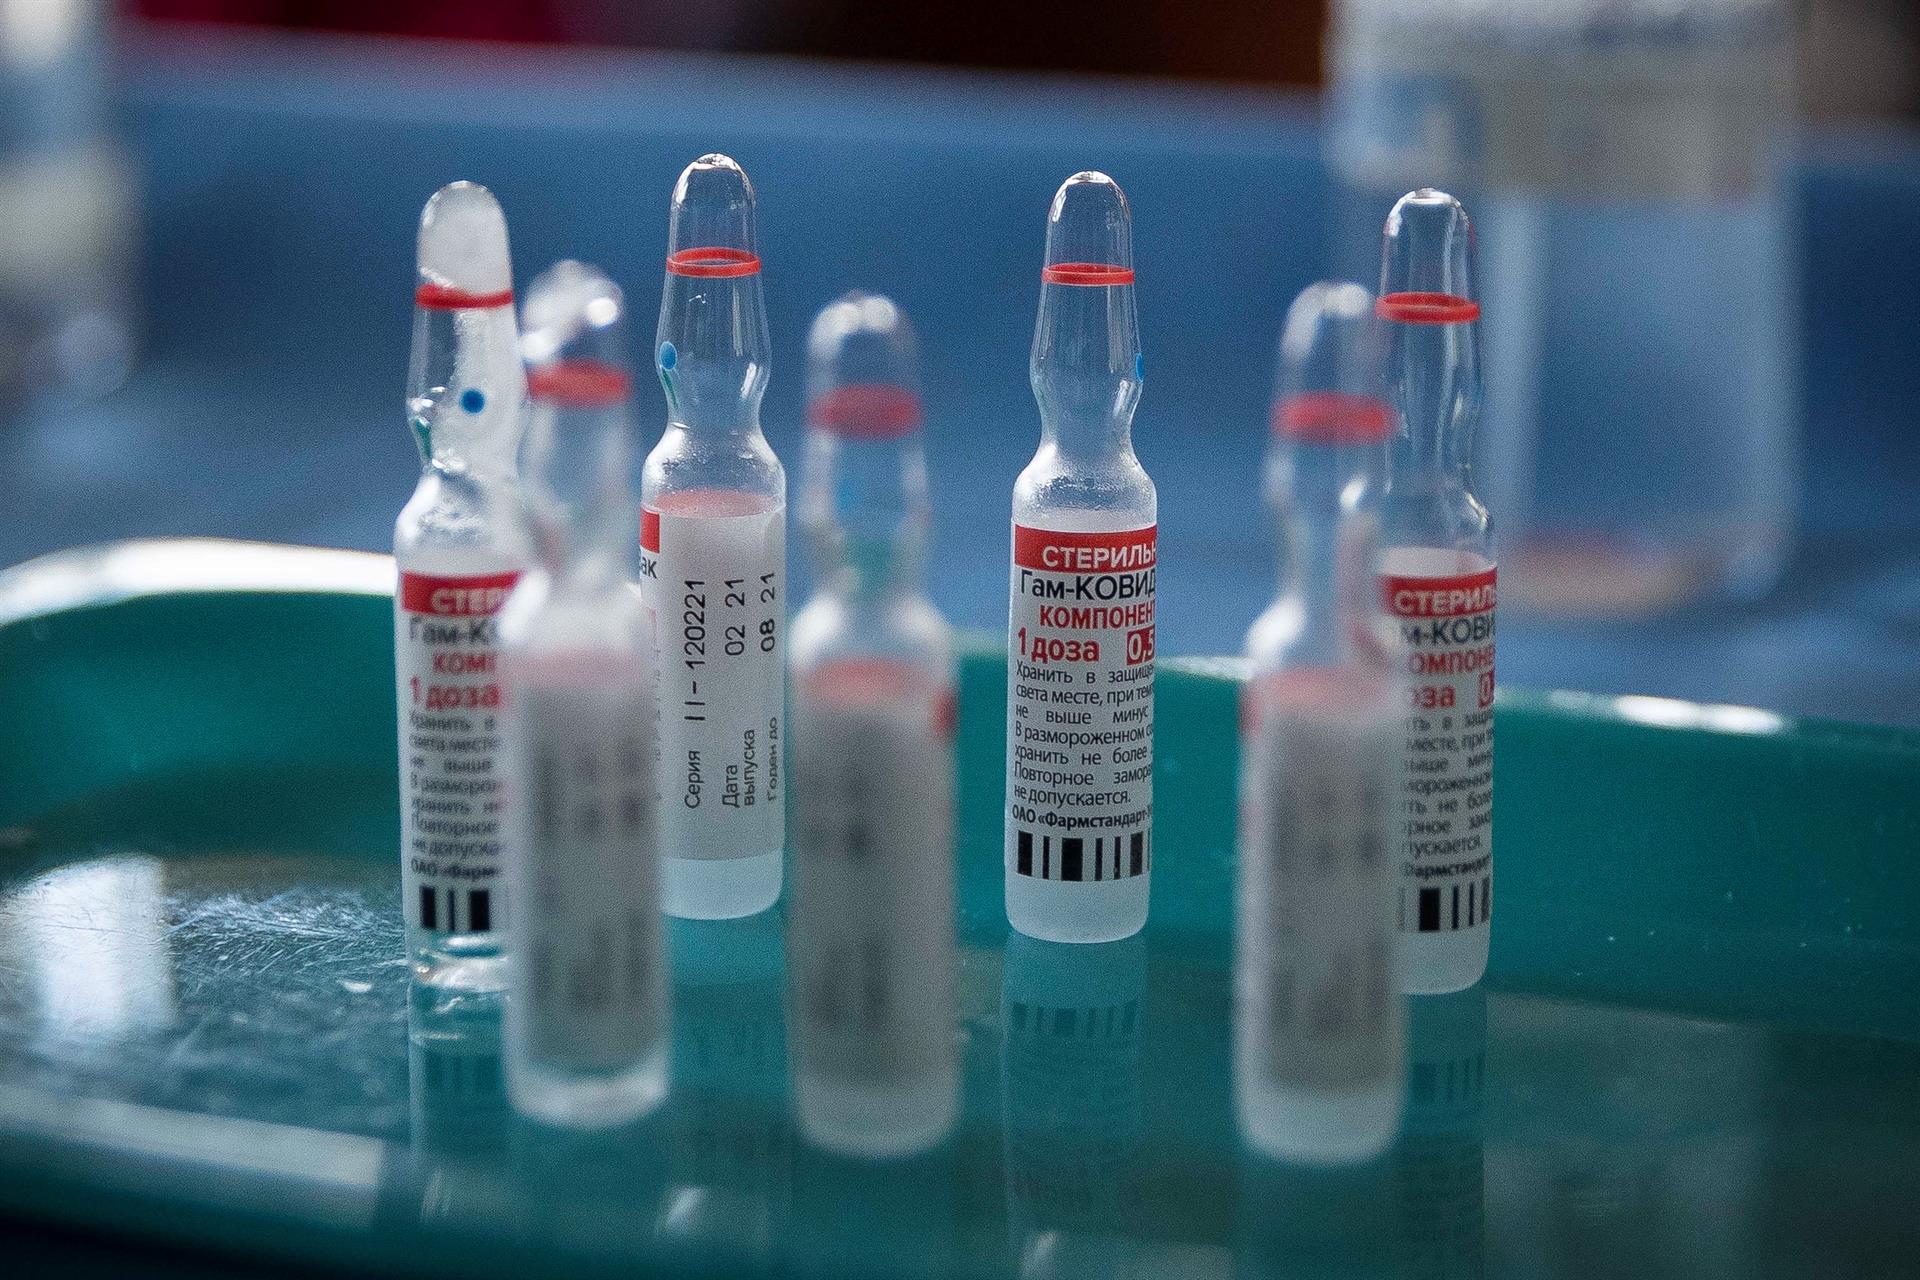 La OMS volverá a examinar la vacuna rusa  Sputnik V. (Foto Prensa Libre: EFE)